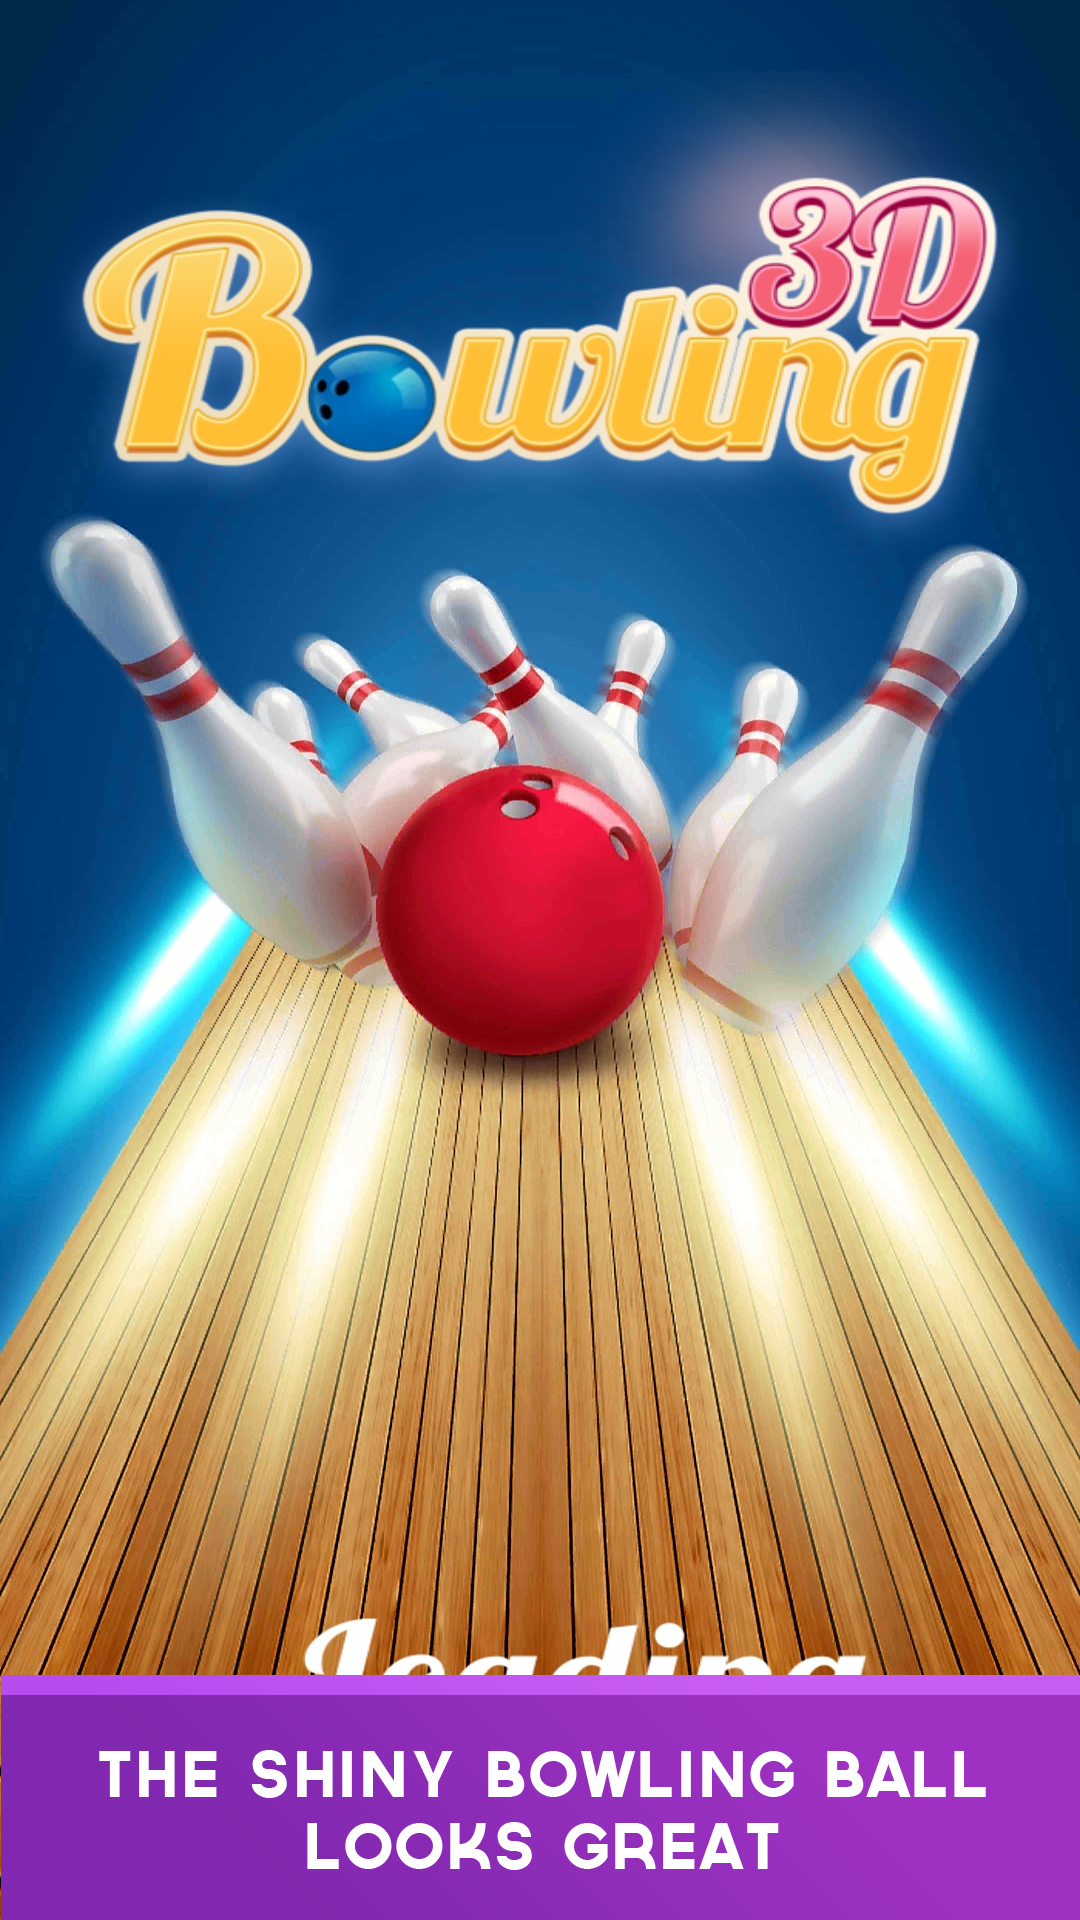 Screenshot 1 of 3D Bowling Club - Аркадная спортивная игра с мячом 1.1